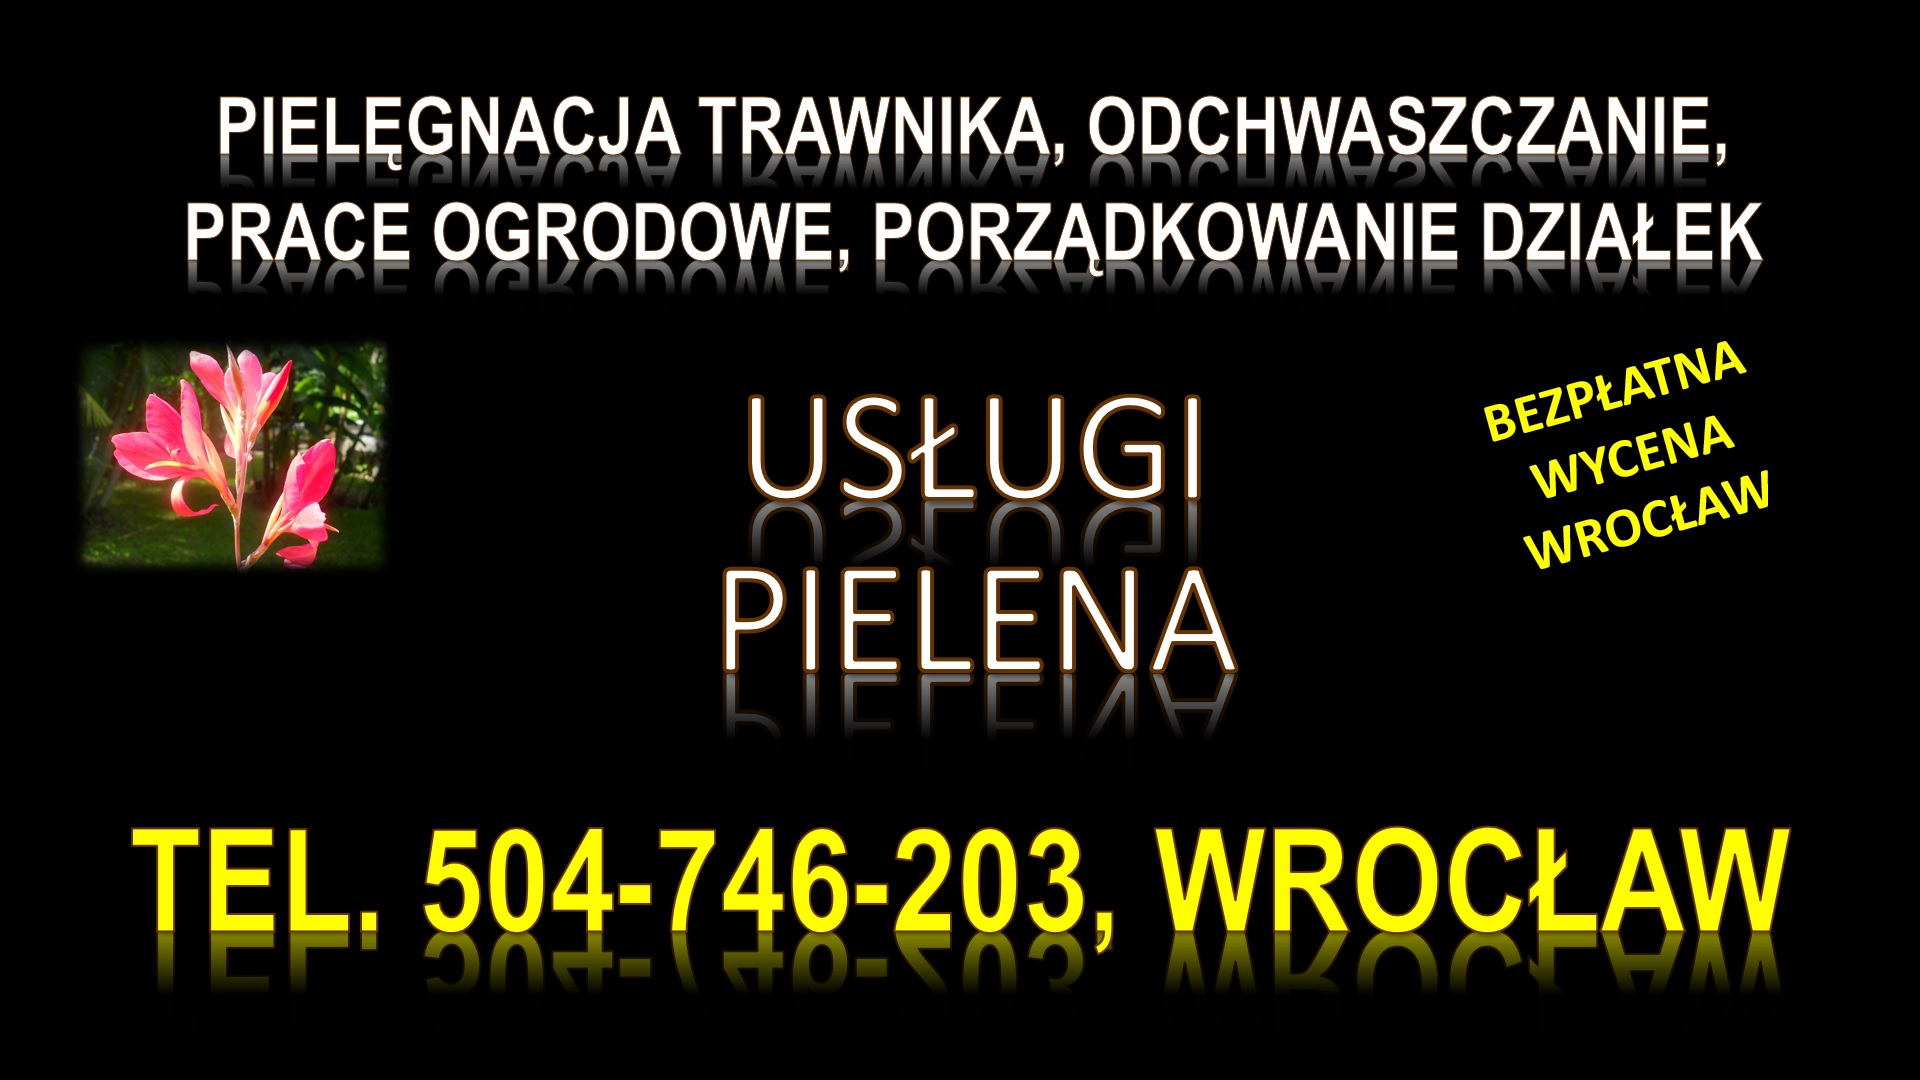 Pielenie działki, cena, tel. 504-746-203. Wrocław. Odchwaszczenie trawnika.